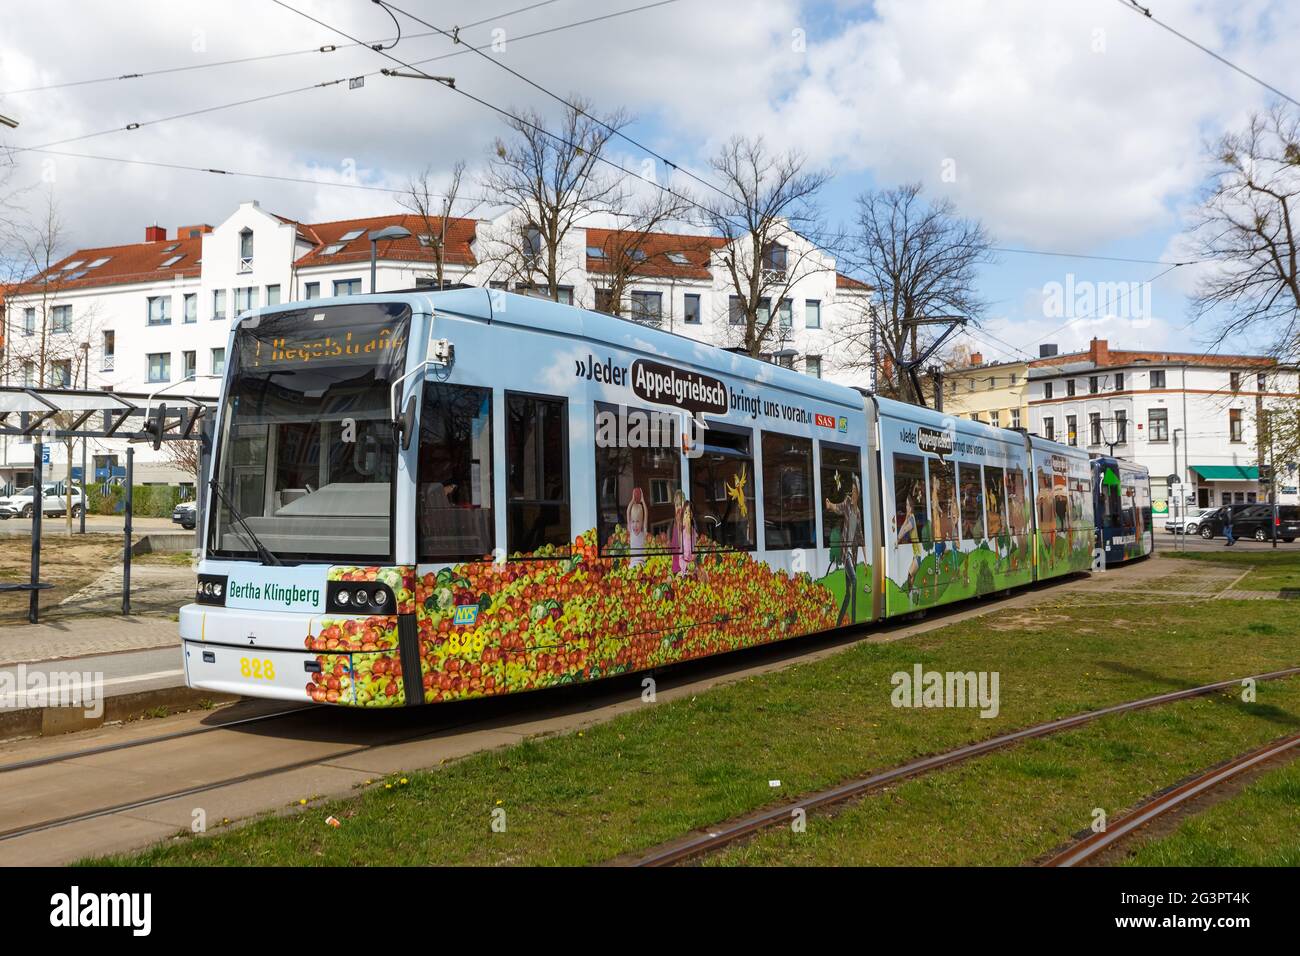 Schwerin, Germany - April 22, 2021: Tram public transport Platz der Freiheit station in Schwerin, Germany. Stock Photo